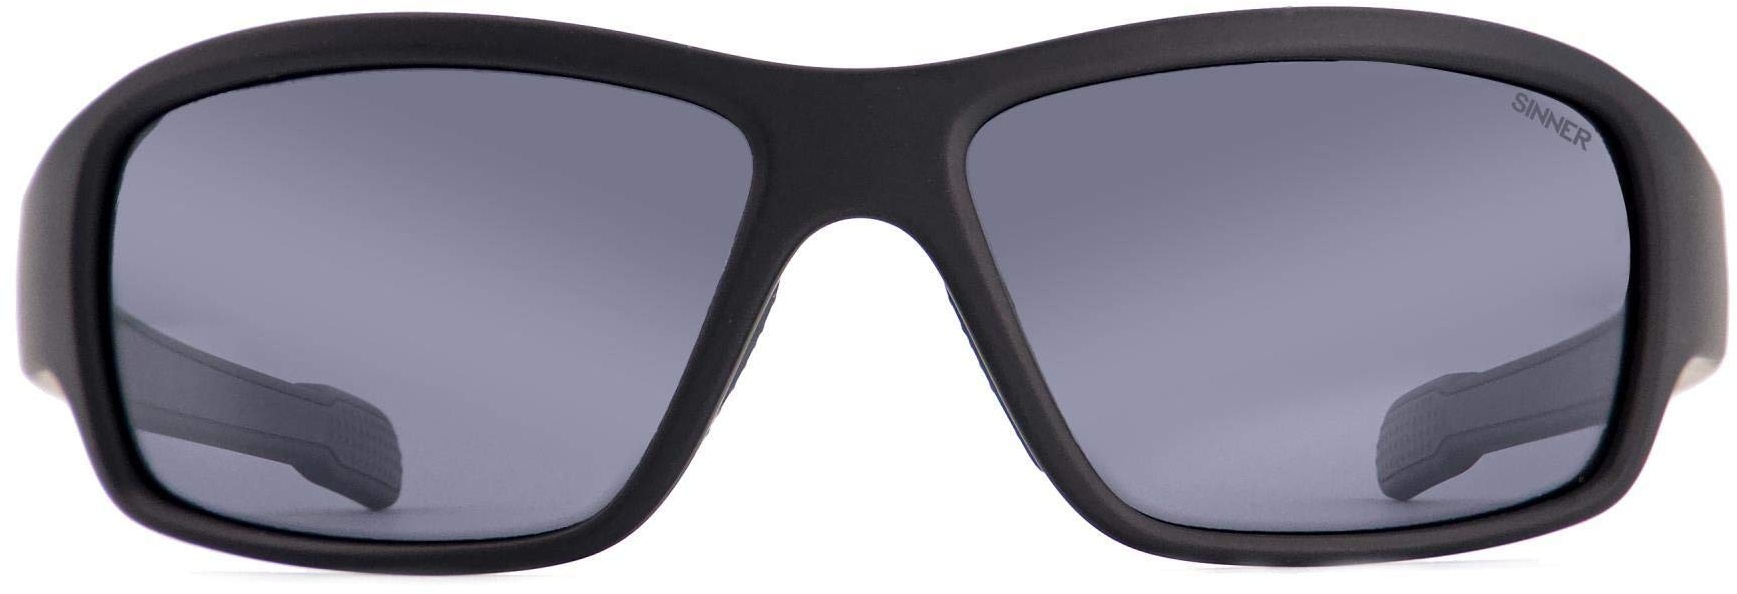 SINNER Ros X Sonnenbrille - Herren und Damen - Polarisierte Gläser - 100% UV400 Schütz - Sportliche Aktivitäten – Langlebiges und Rutschfestes Material – Stylisch Design